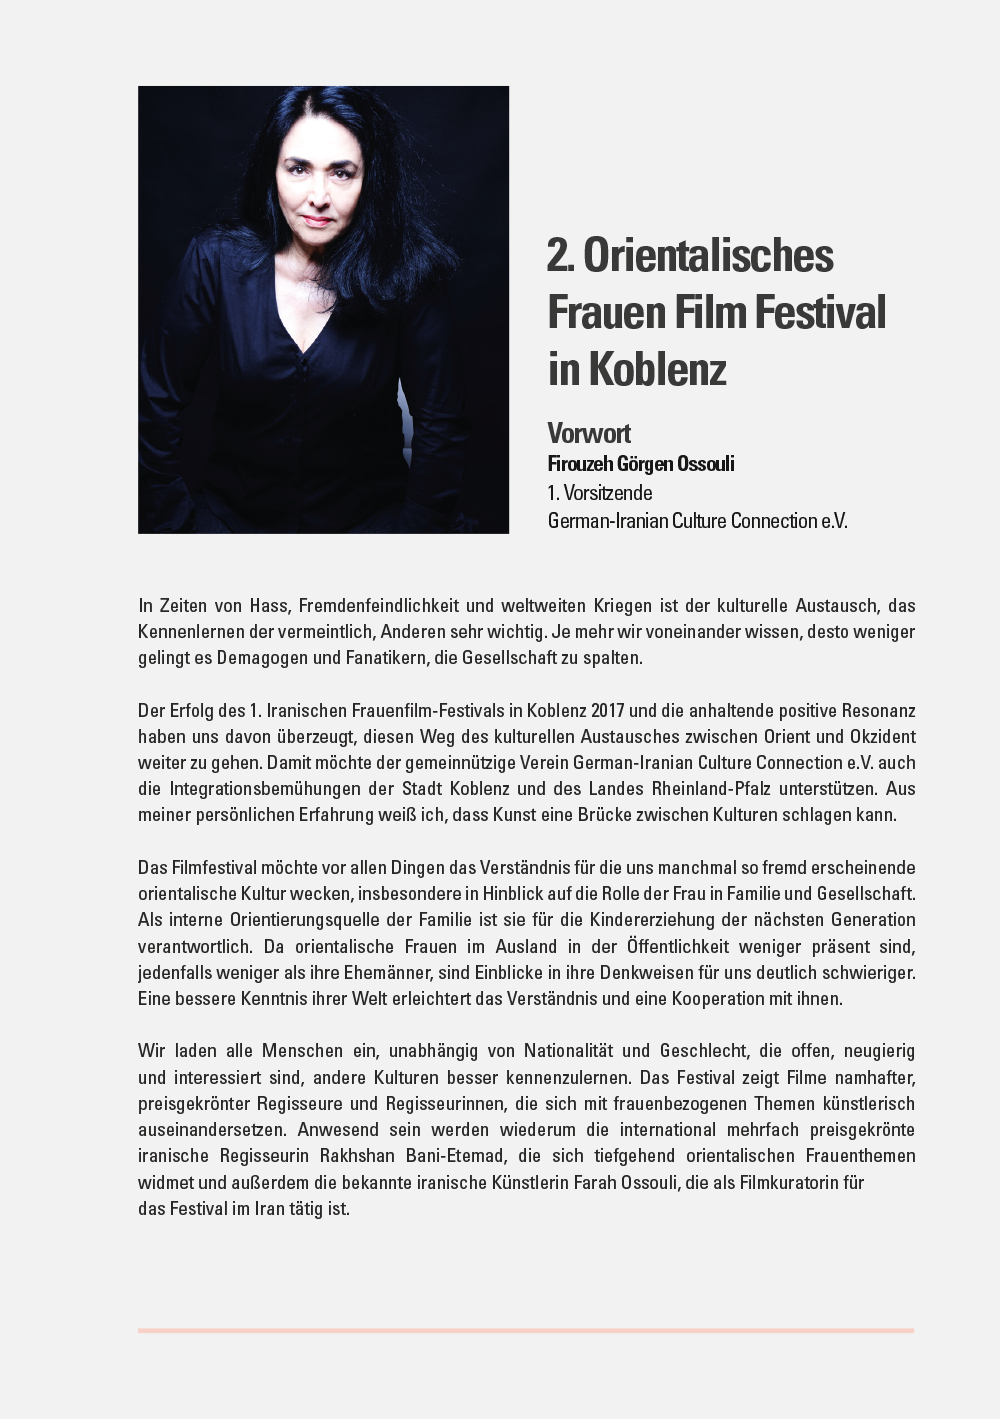 2. Orientalisches Frauen Film Festival Koblenz